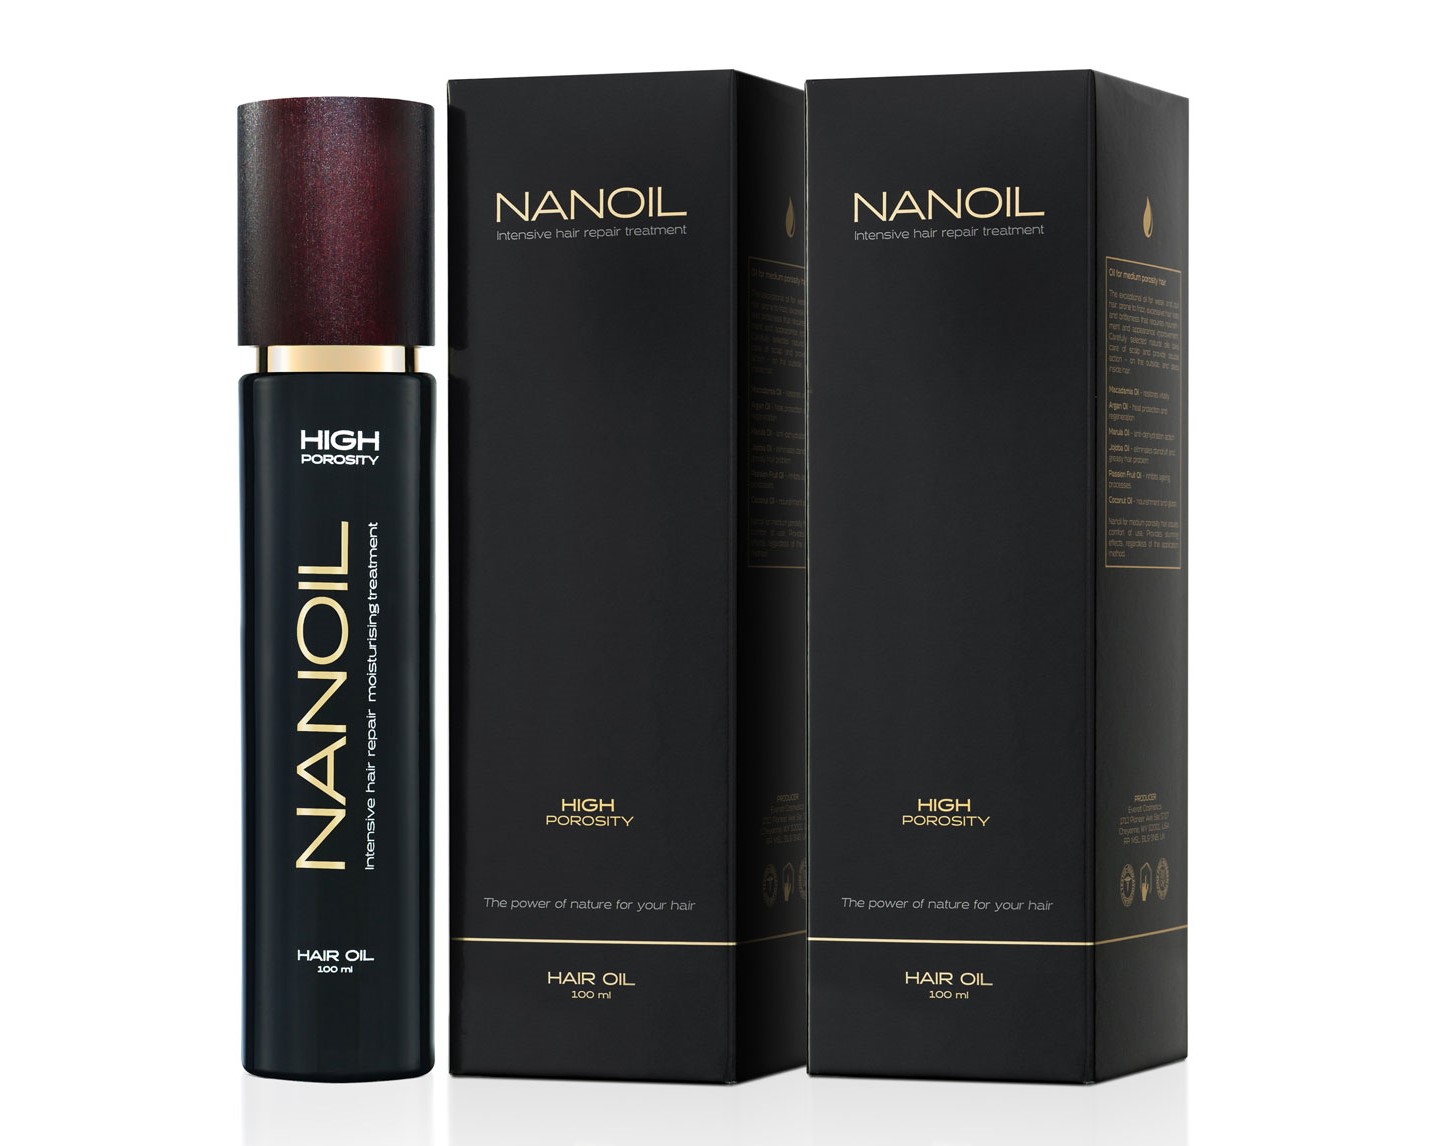 Egészséges haj Nanoil-nak köszönhetően